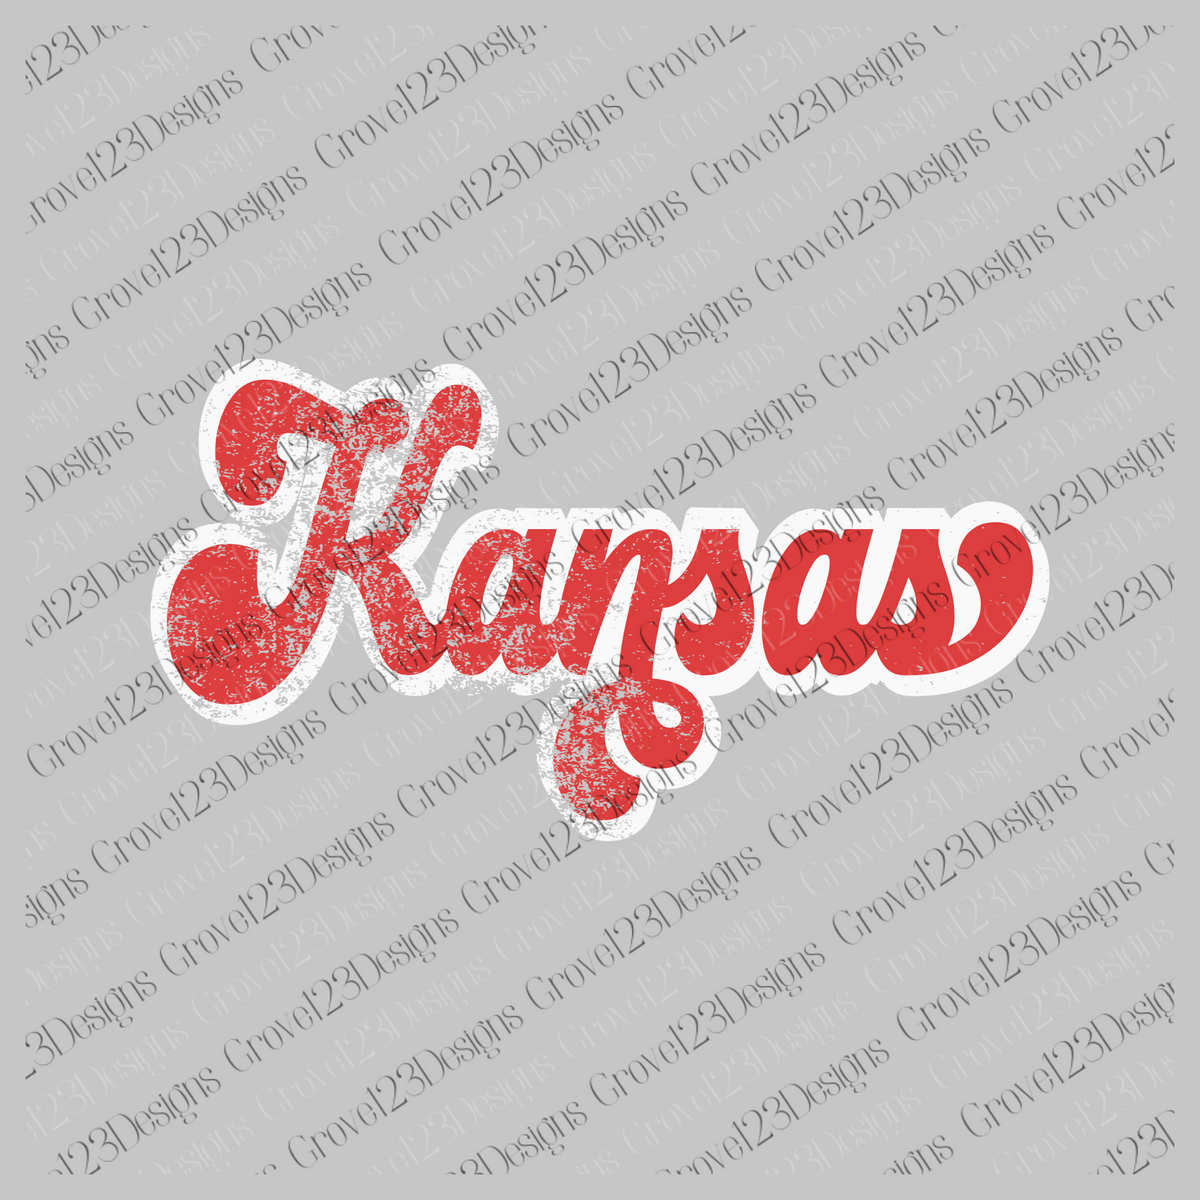 Kansas Red & White Retro Shadow Distressed